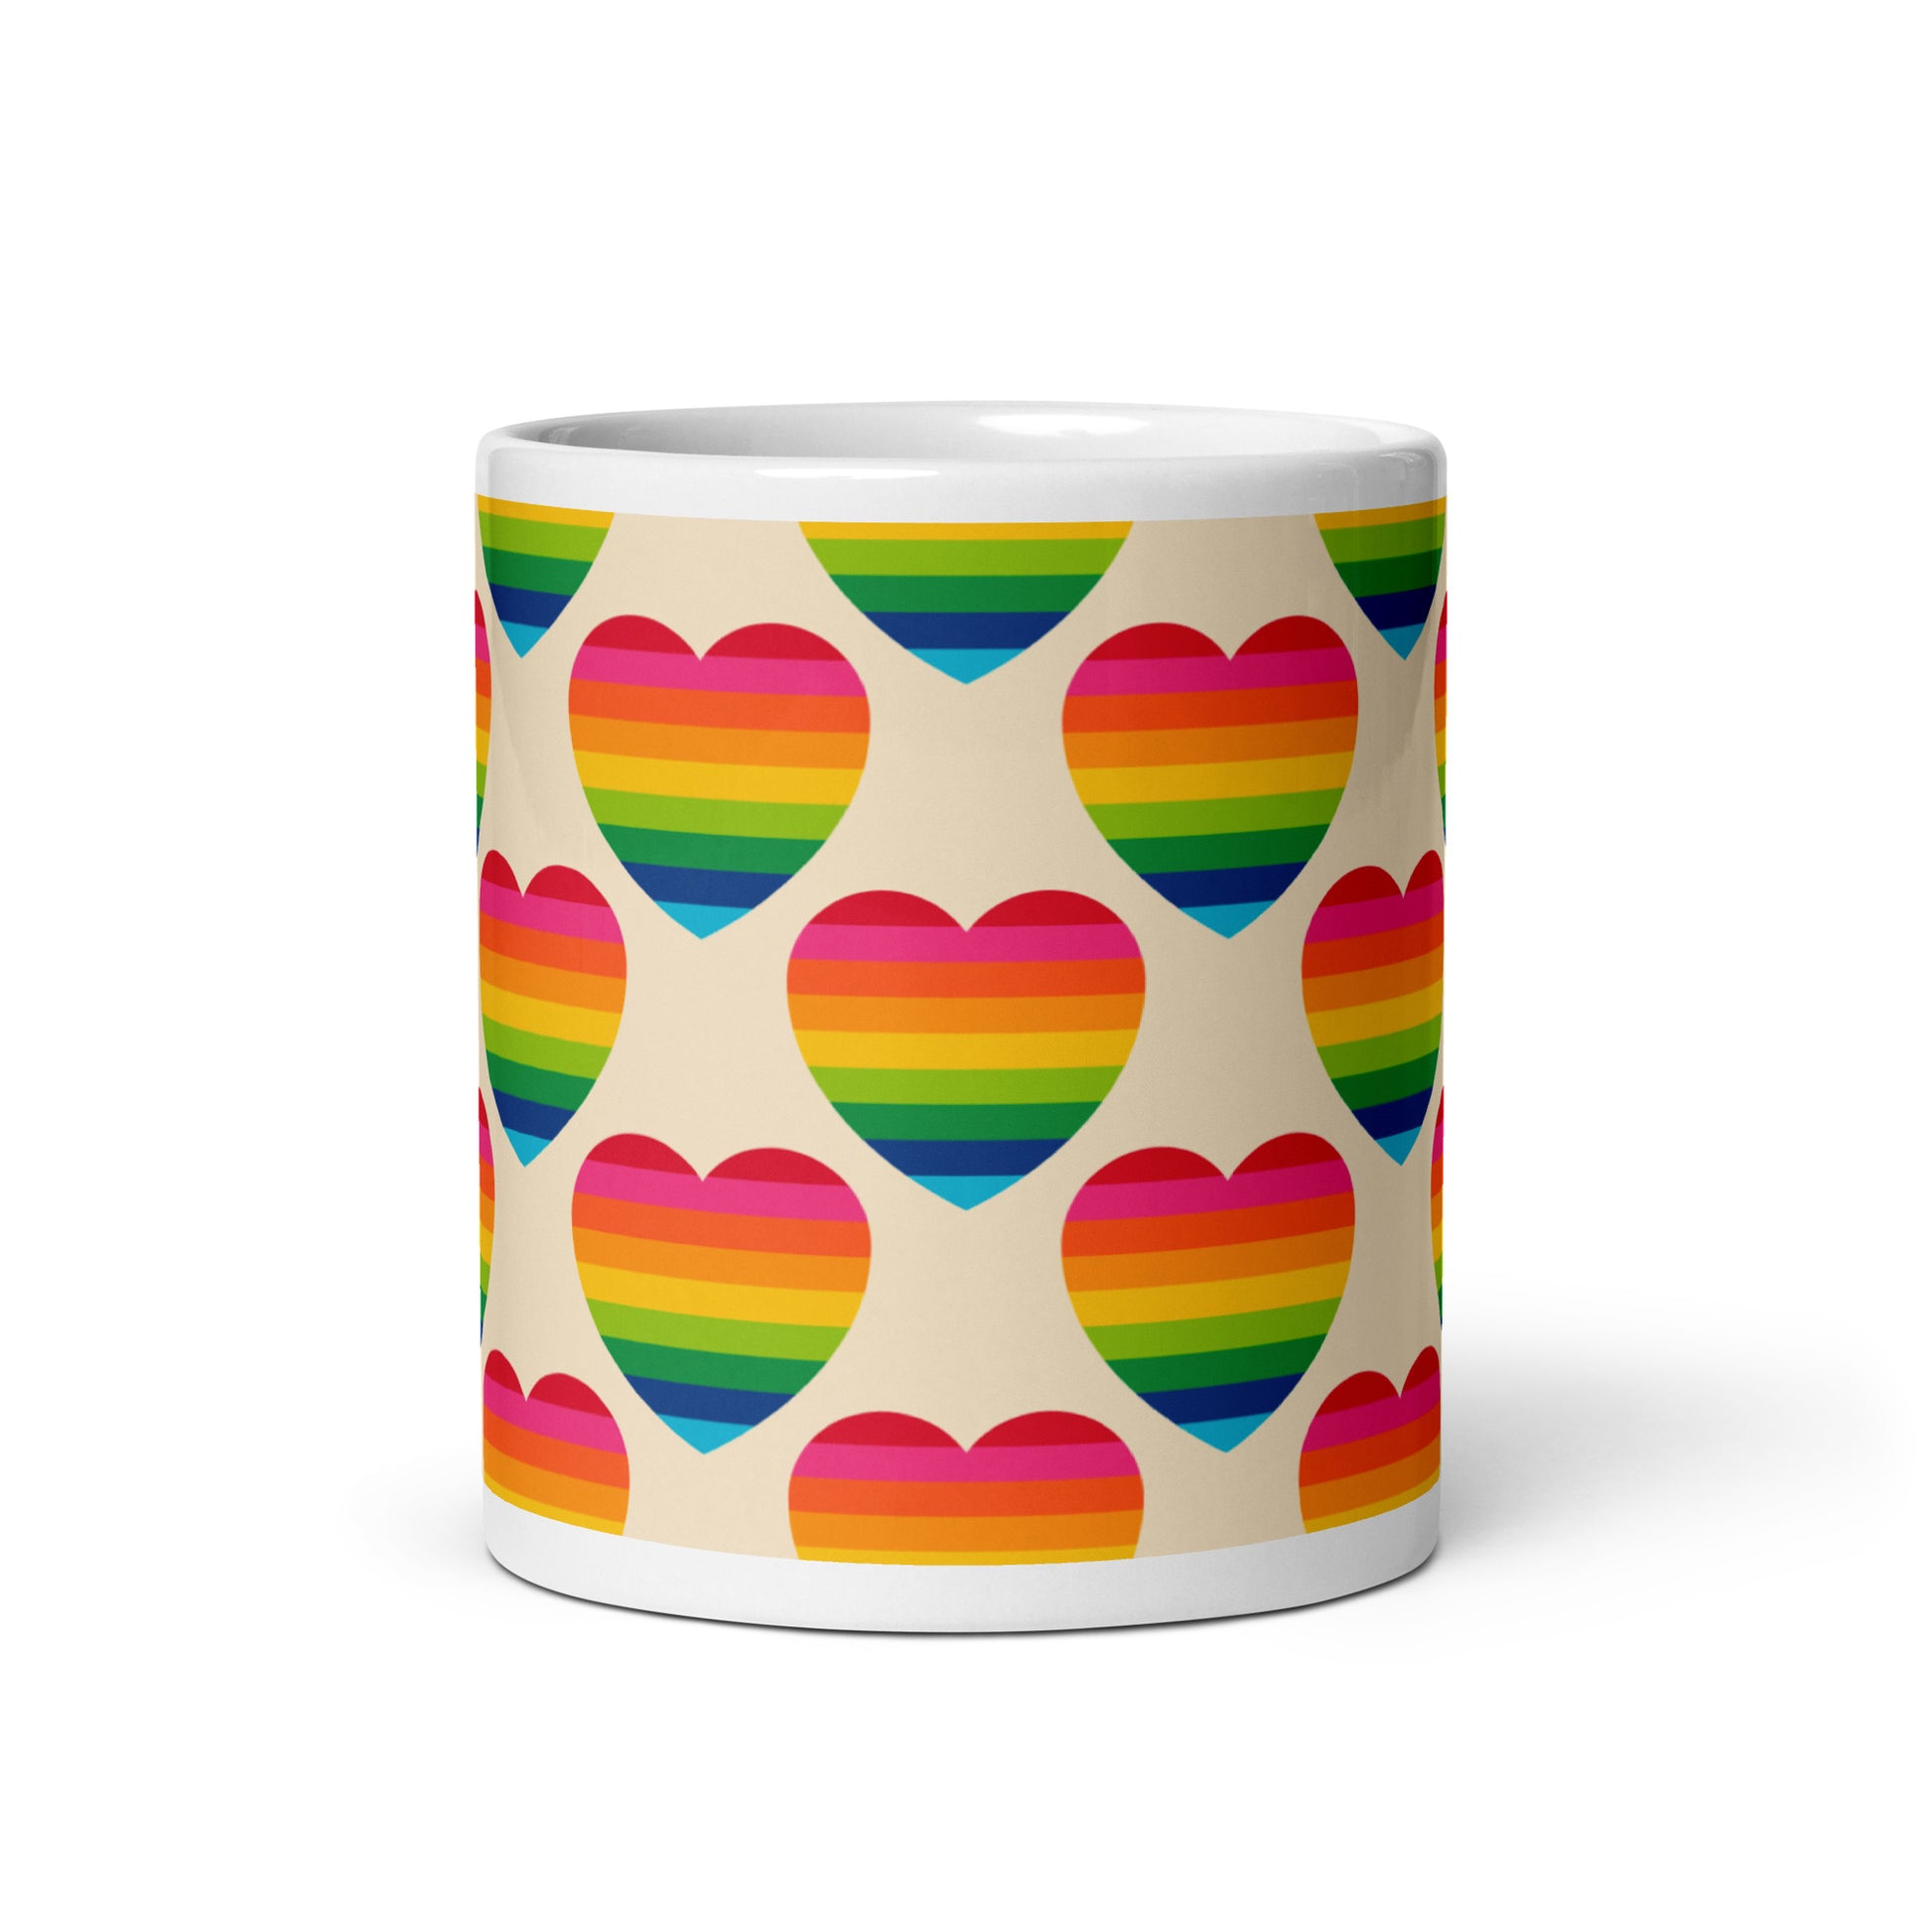 ELLIE LOVE rainbow - Ceramic Mug